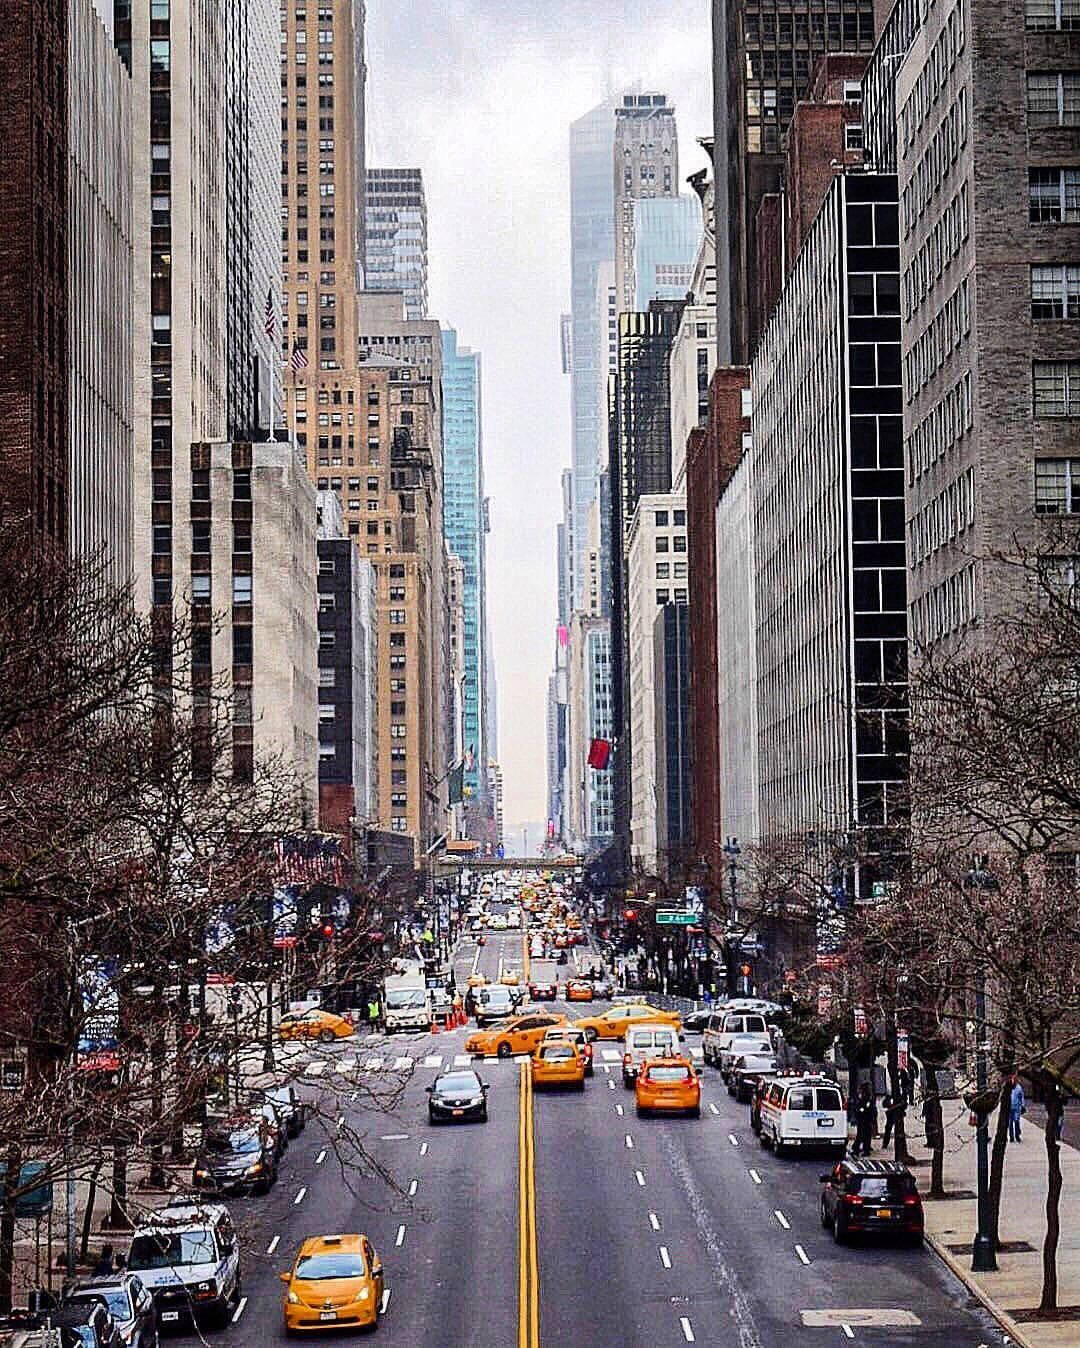 Tag et gåtur ned ad New Yorks ikoniske gader Wallpaper